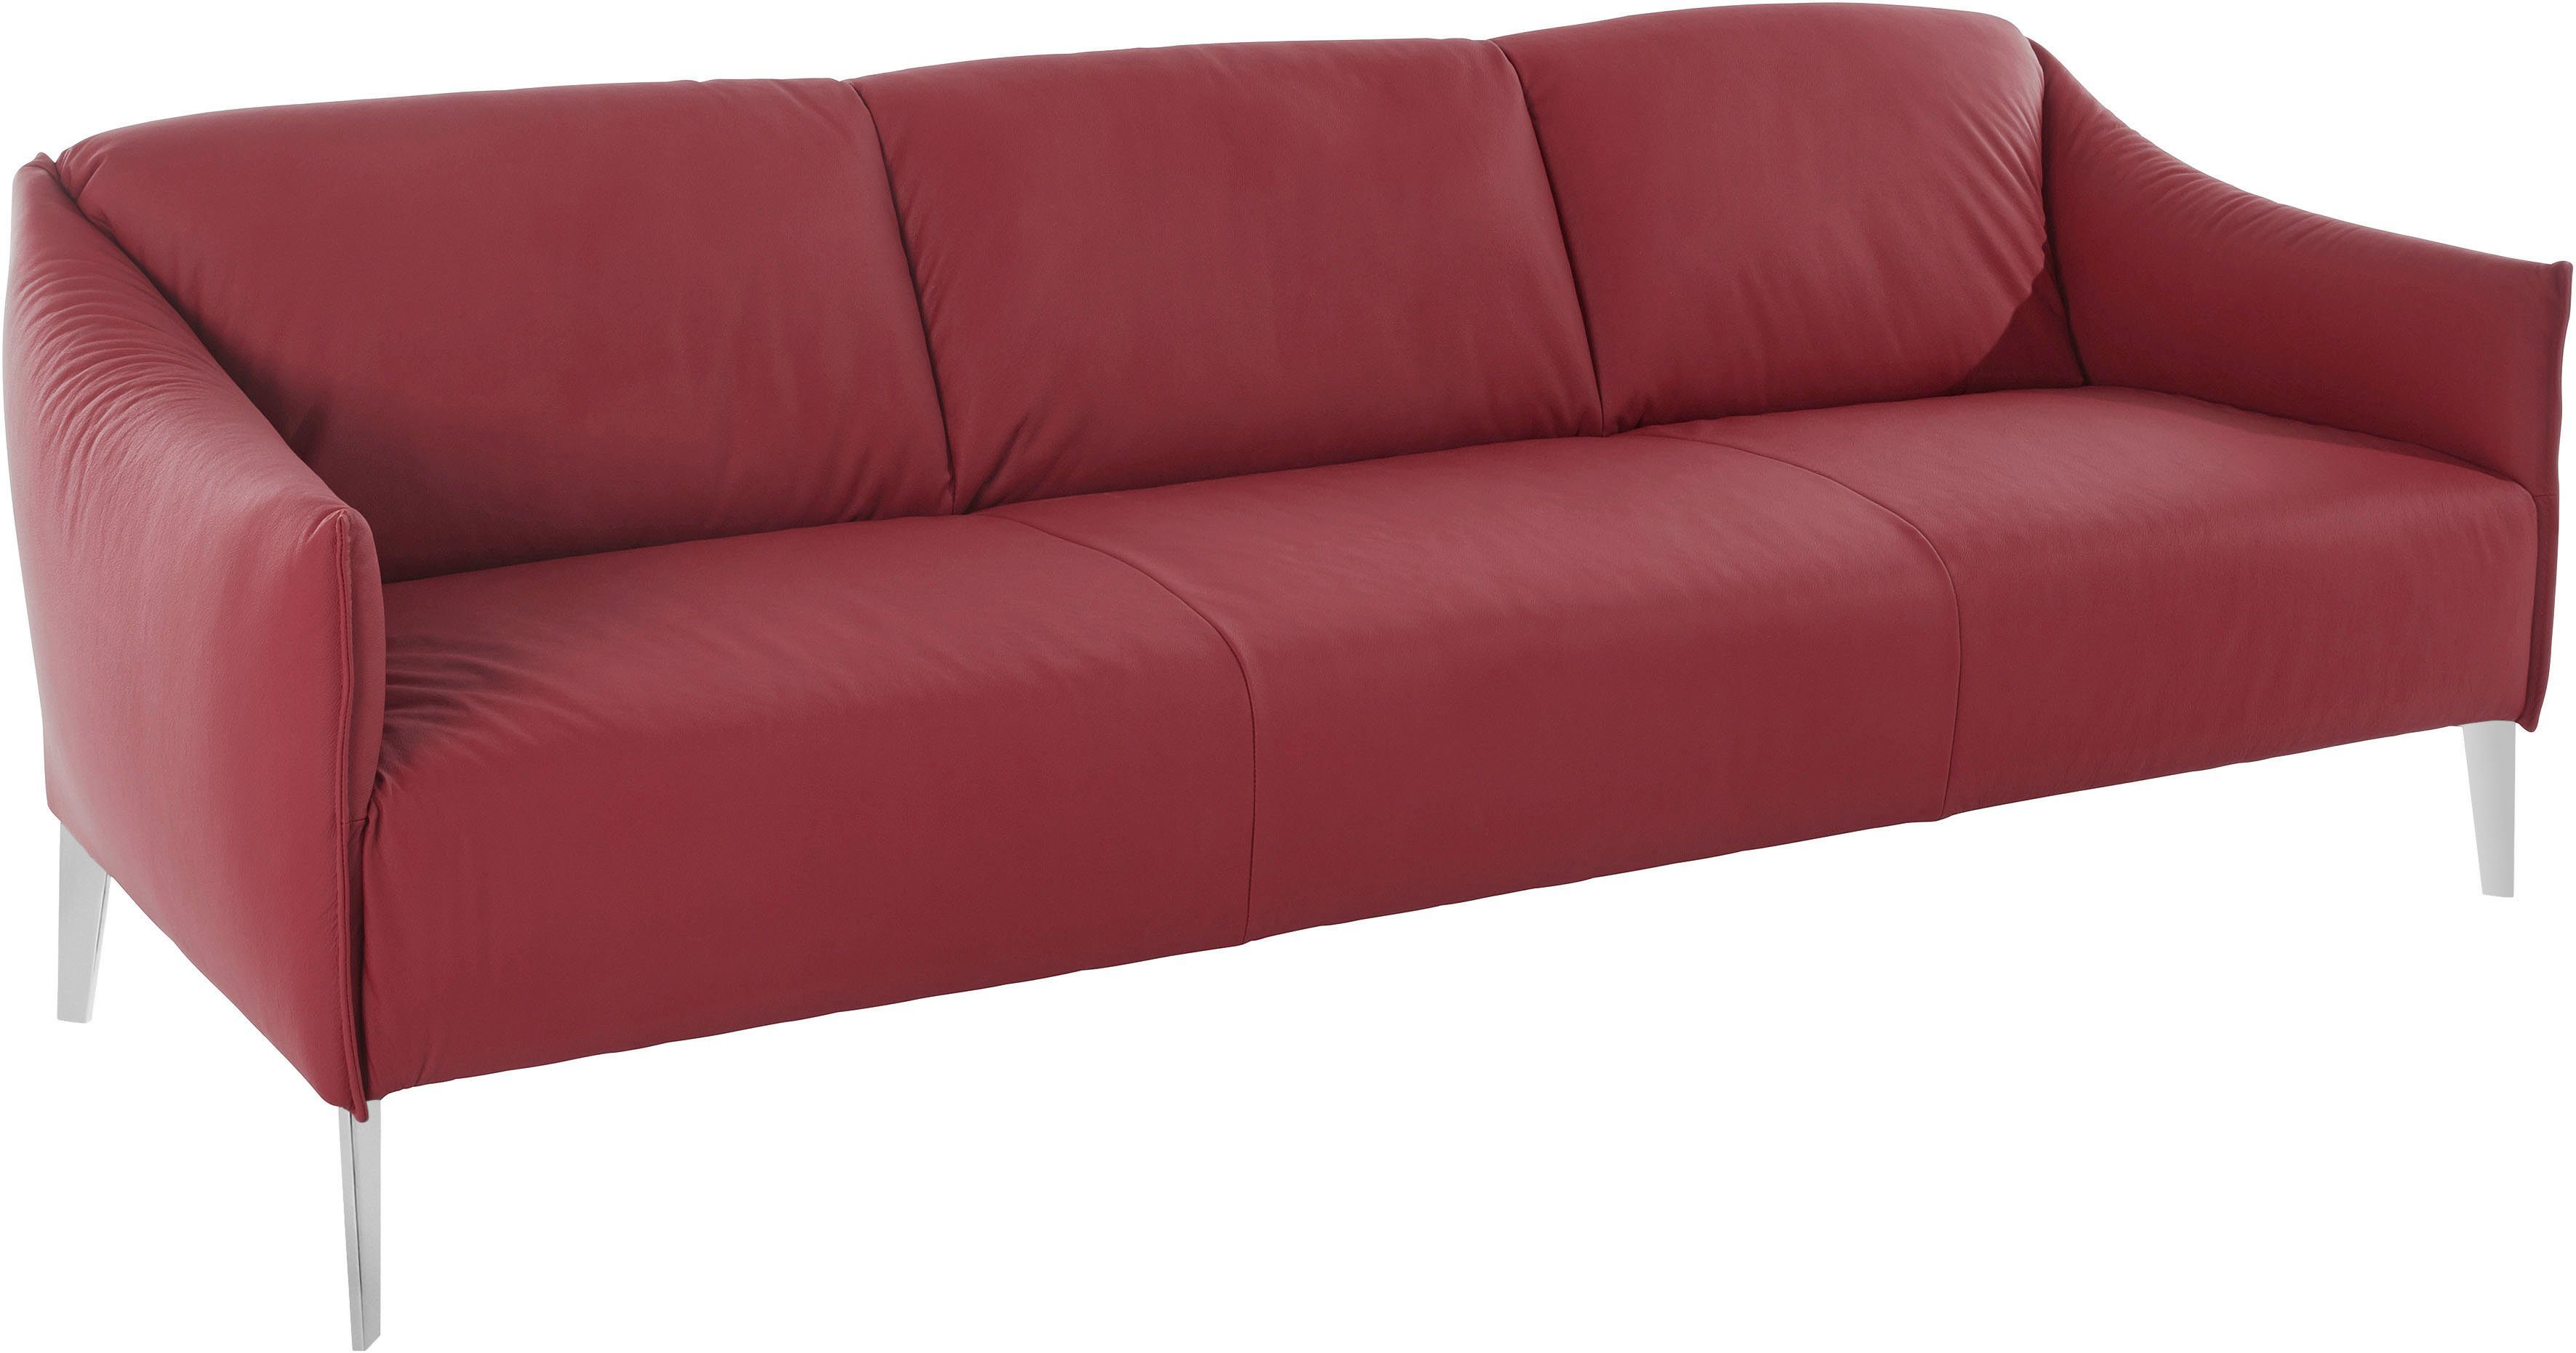 Chrom W.SCHILLIG 3-Sitzer in mit sally, red cm ruby Metall-Winkelfüßen glänzend, Breite 224 Z59